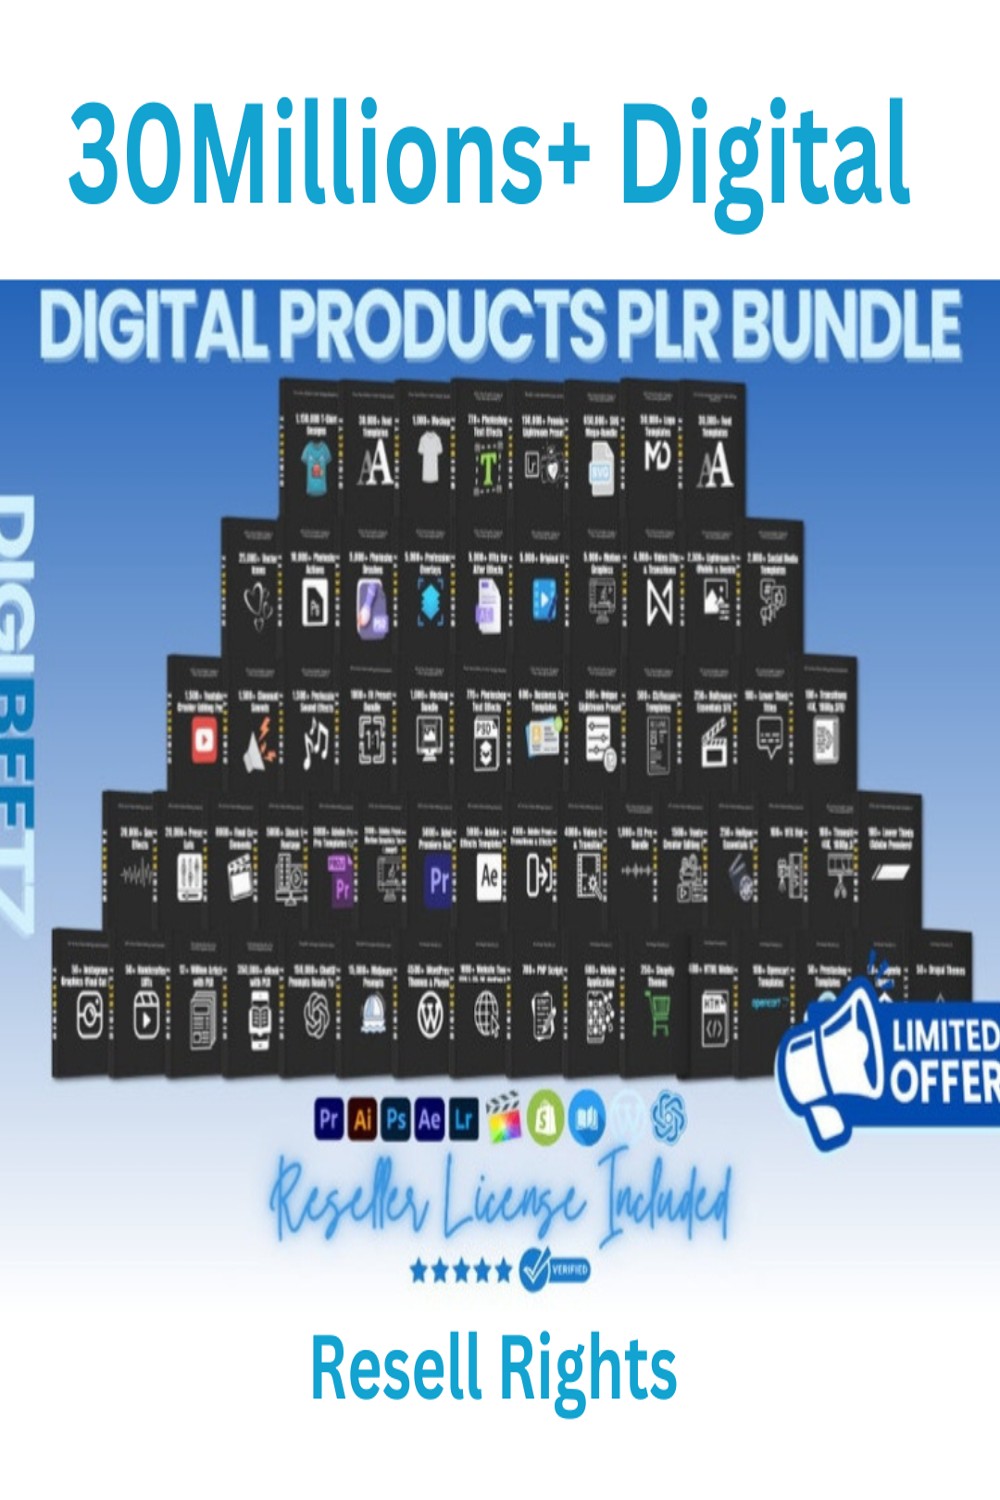 30M+Digital Product Bundle Mega Bundle, Course, Softwere,Printeble pinterest preview image.